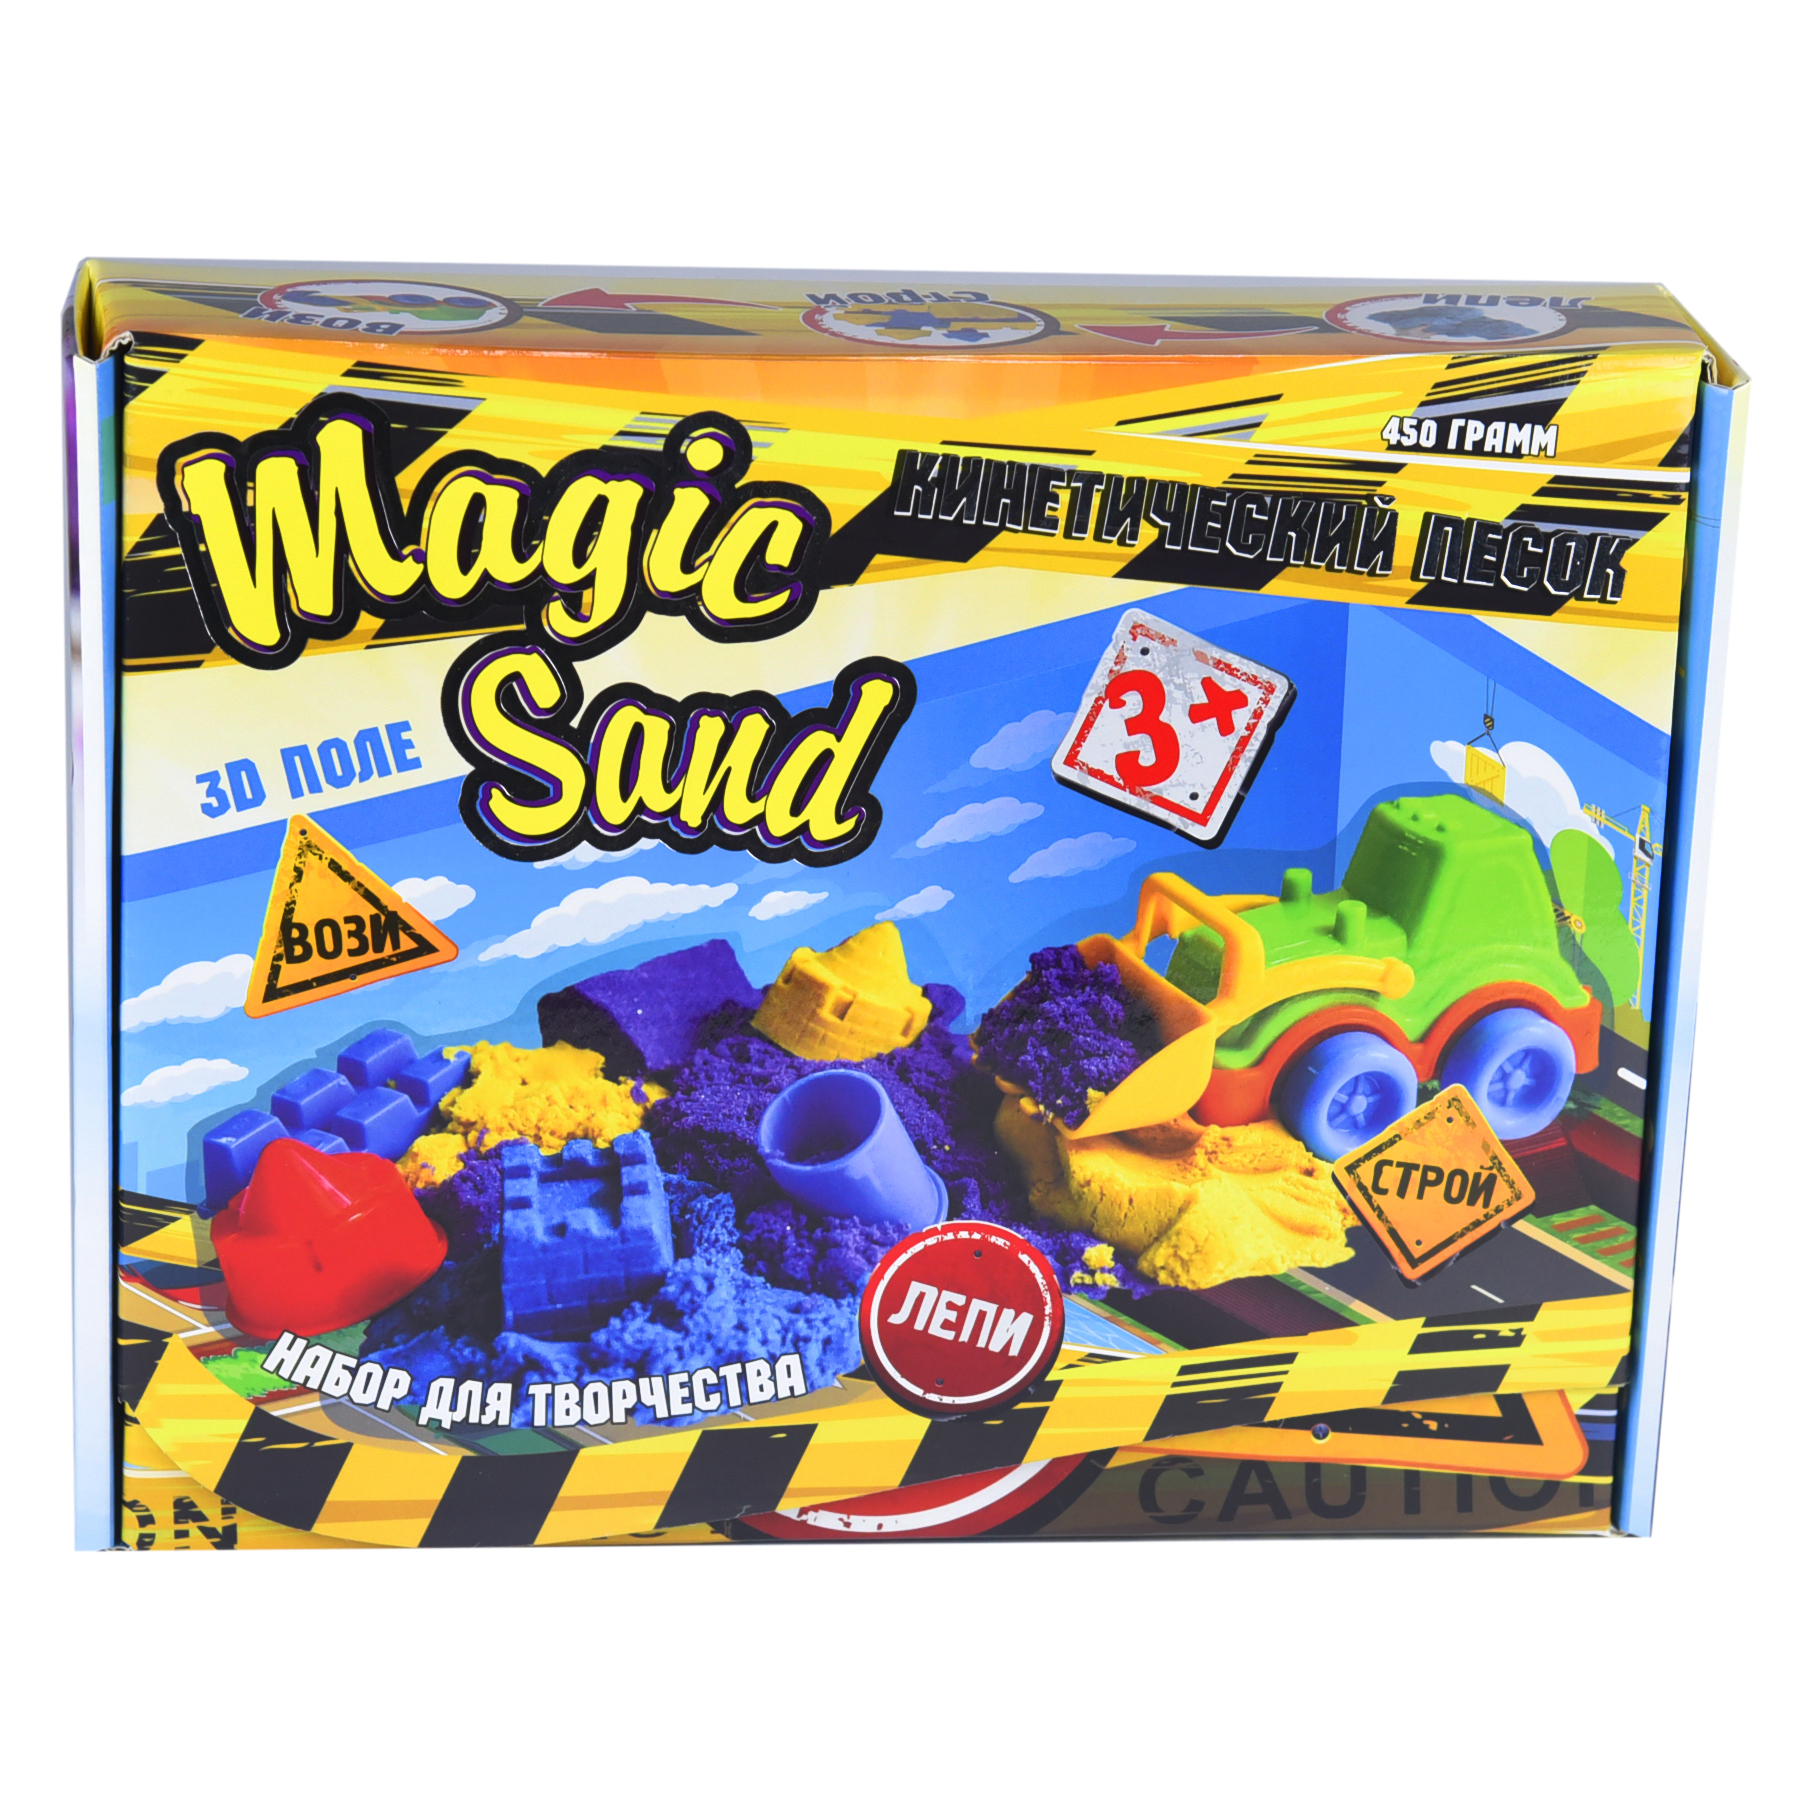 Кінетичний пісок Strateg Magic Sand 0,450 Трактор (51201)